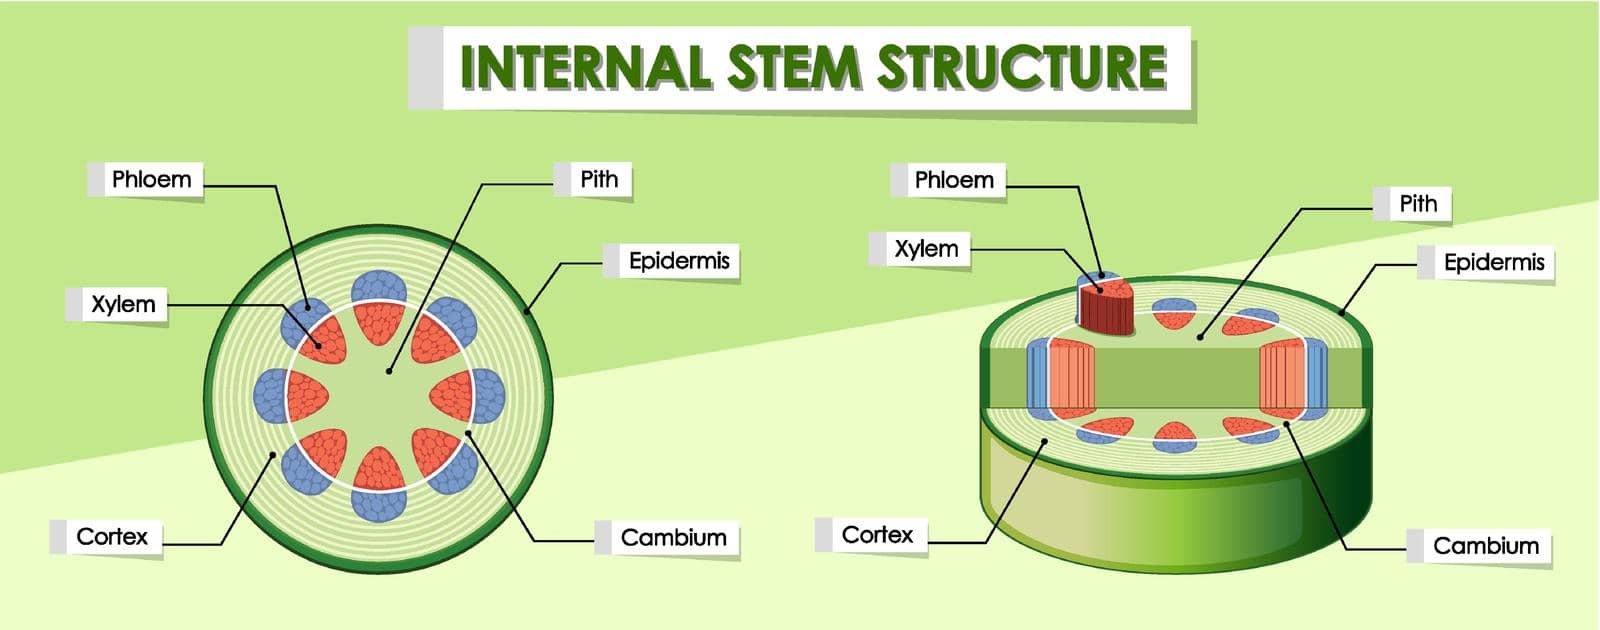 Diagram showing internal stem structure illustration